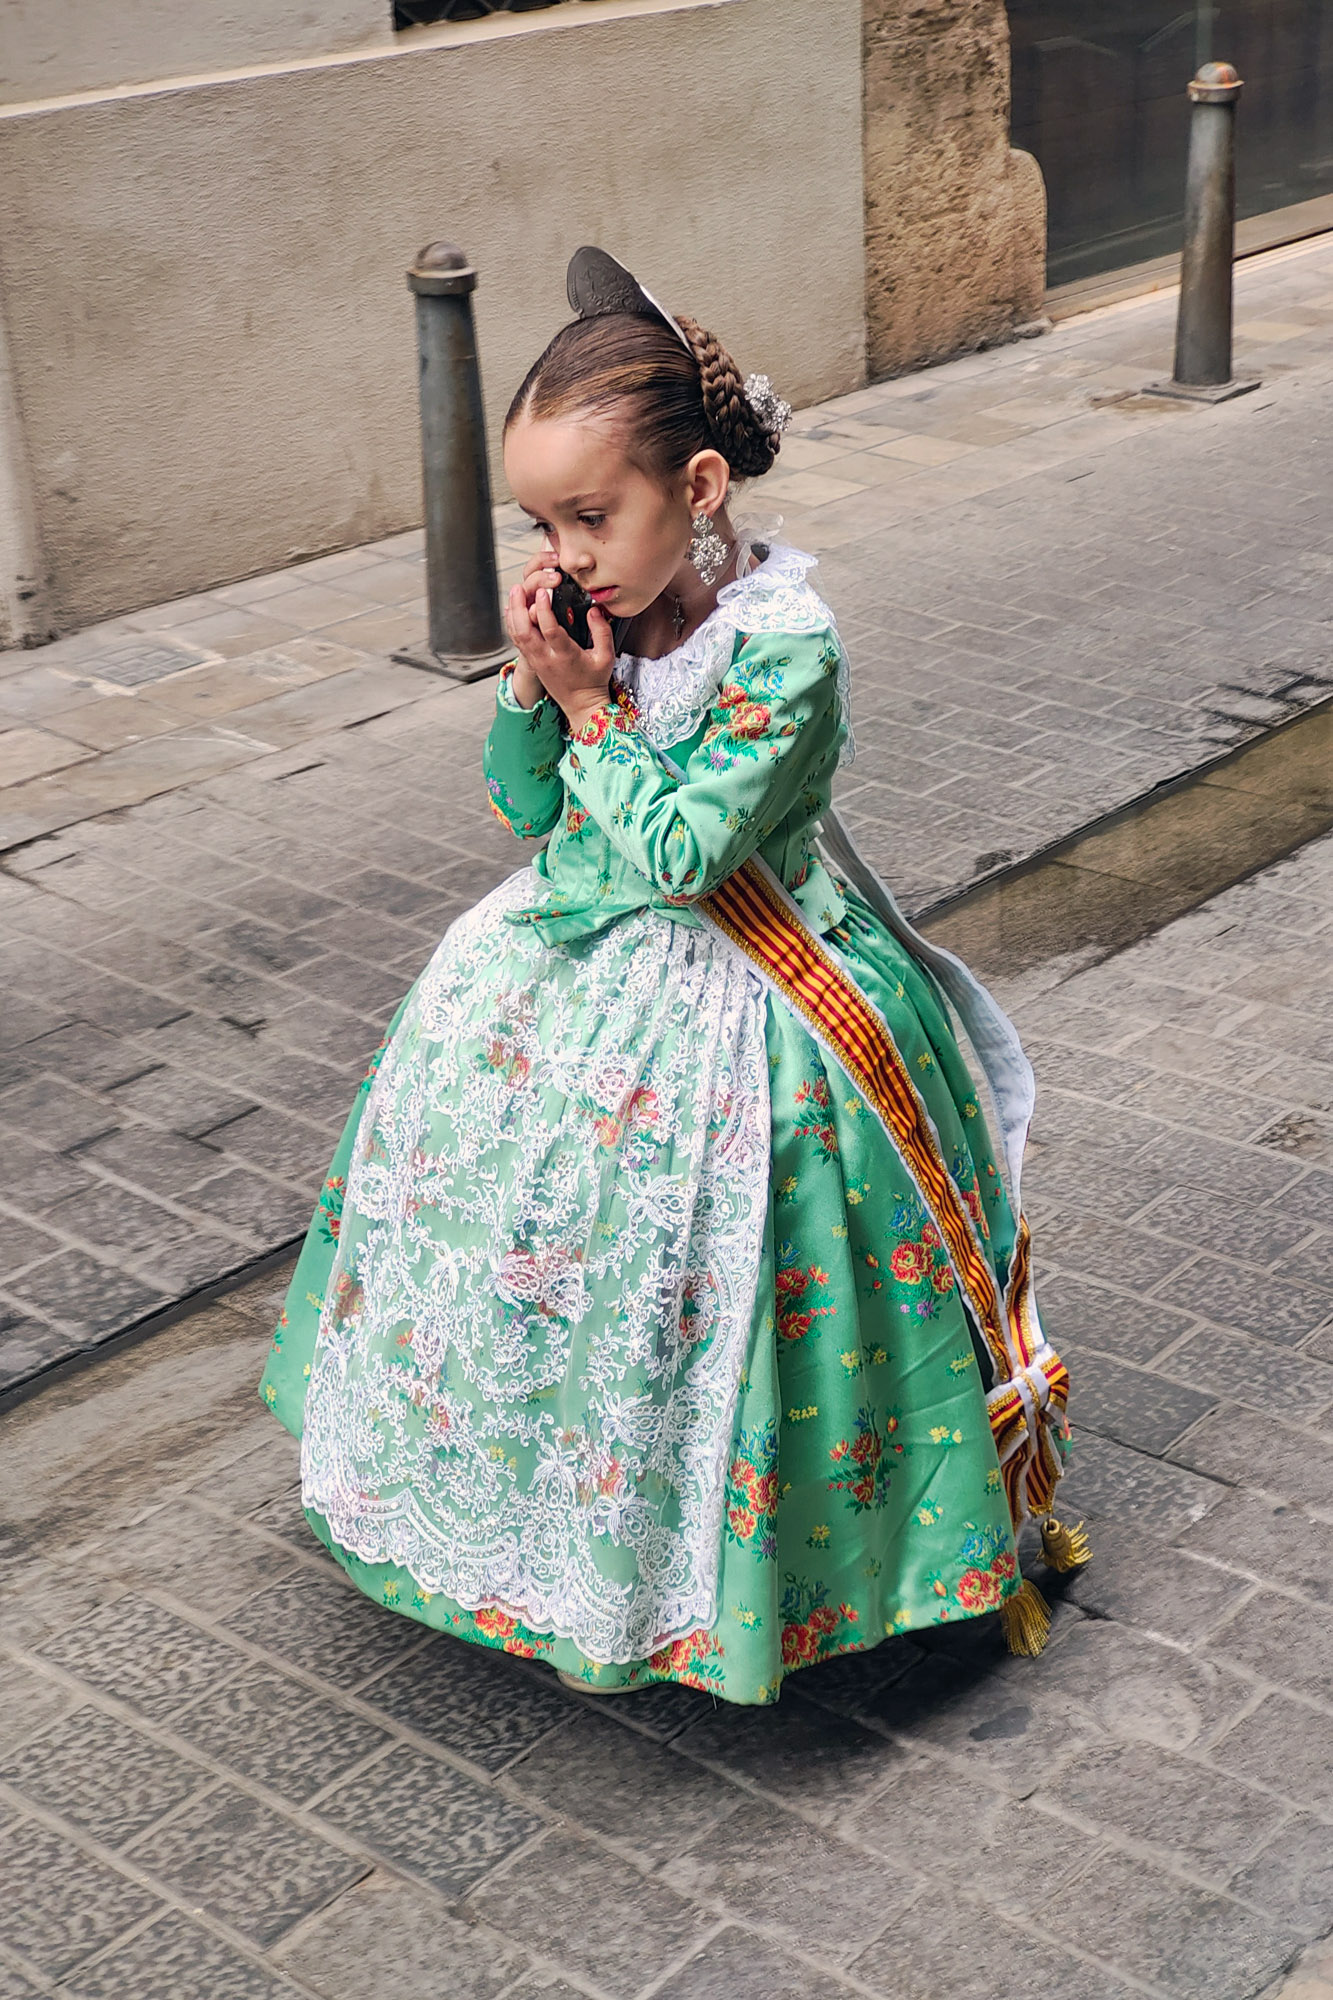 Little Spanish Girl on mobile phone